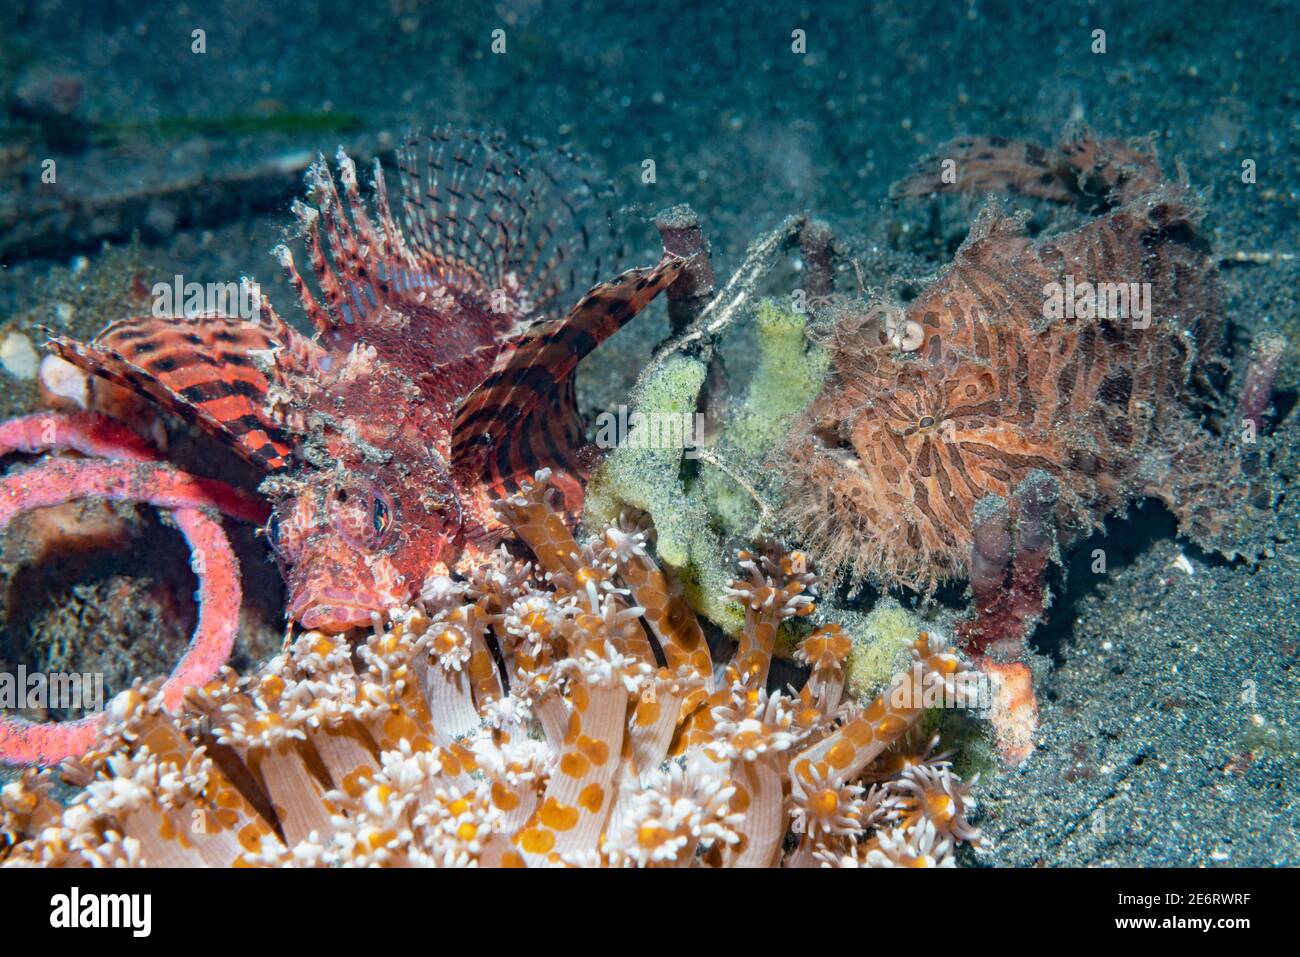 Lionfish à nageoires courtes [Dendrochirus bachypterus] et un poisson-grenouille rayé ou poilu [Antennarius striatus]. Détroit de Lembeh, Nord de Sulawesi, Indonésie. Banque D'Images